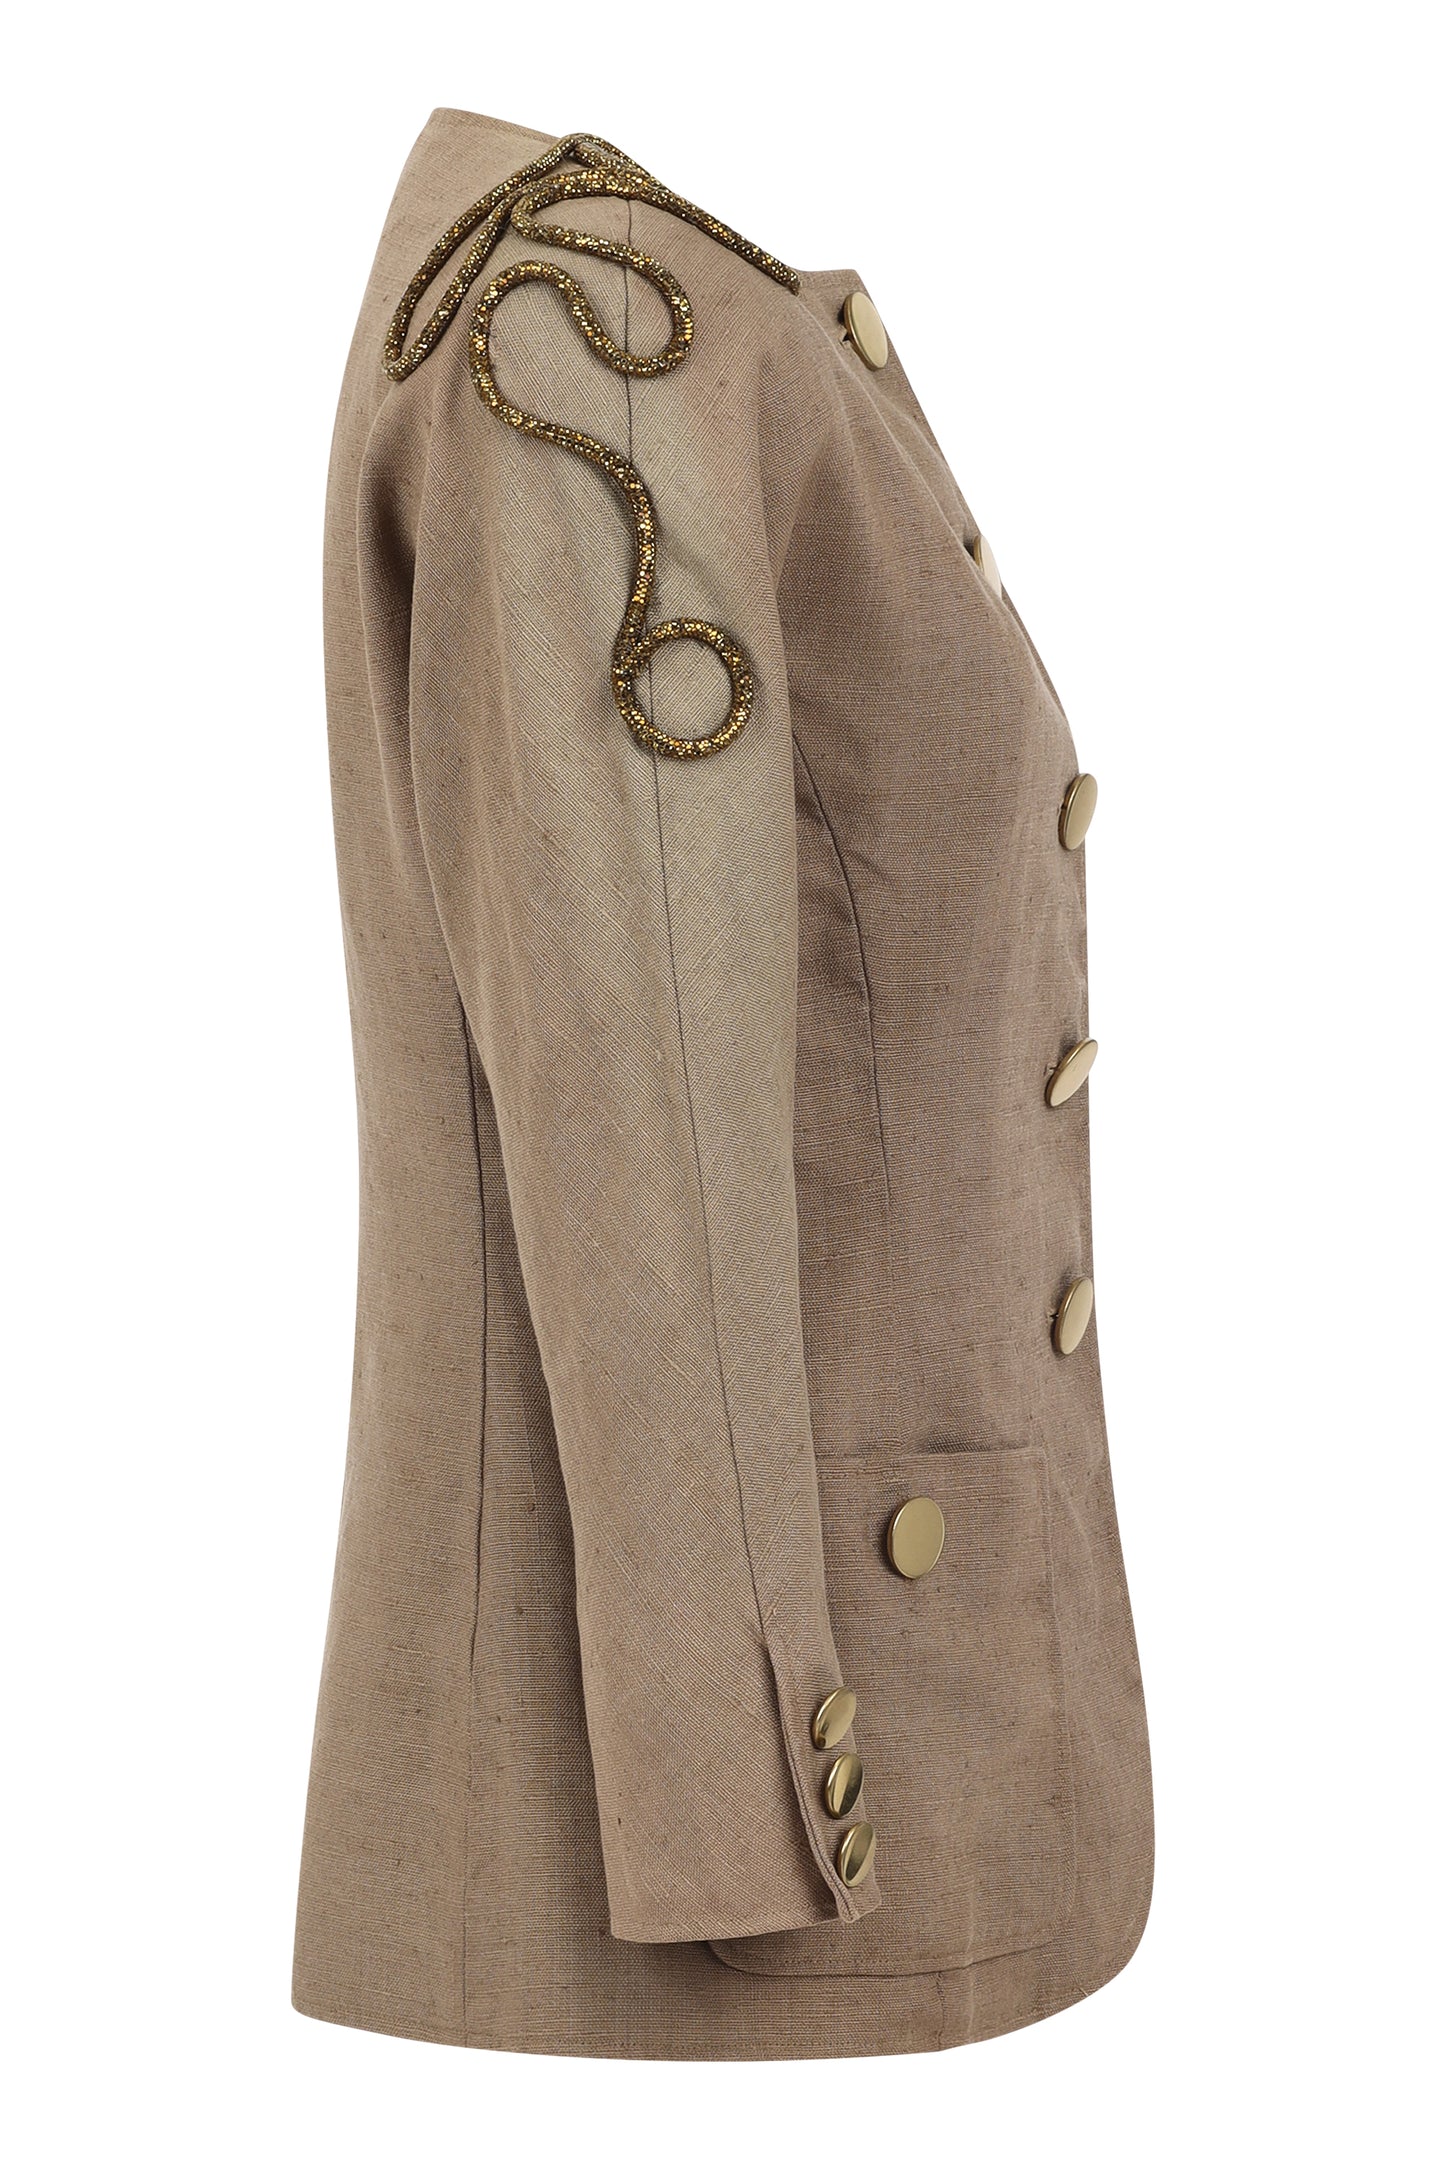 Vintage Oscar de la Renta blazer adorned by Jen Wonders